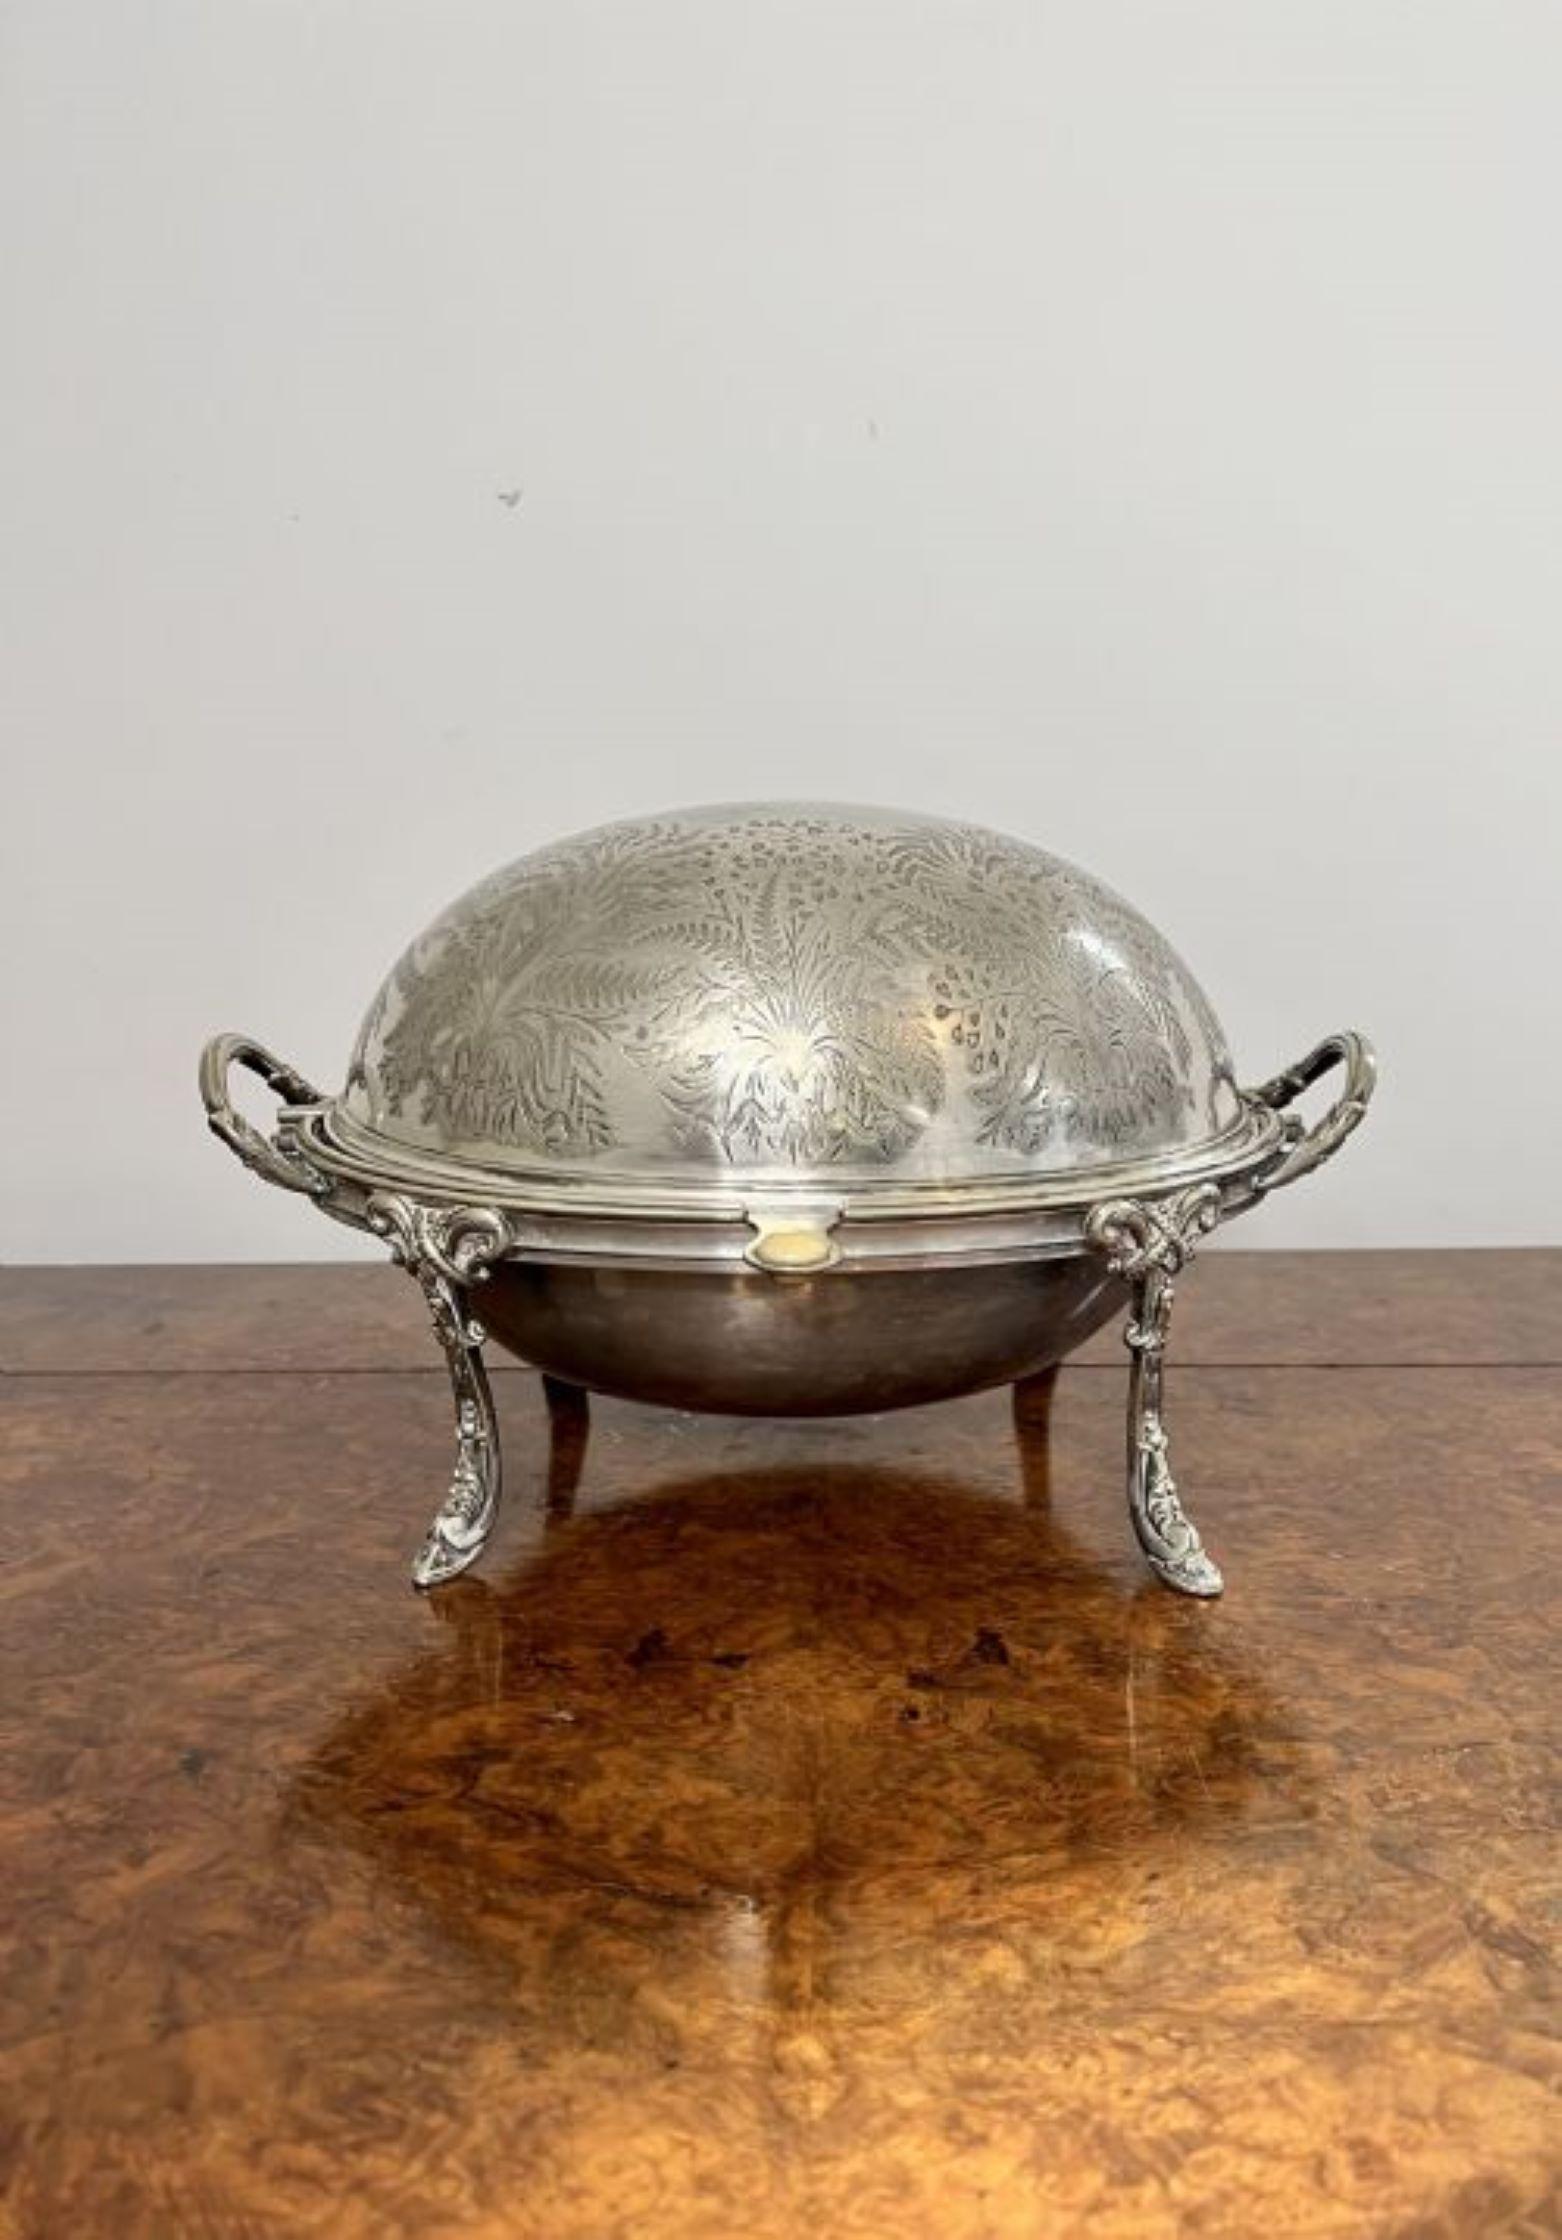 Ancien plat à chausson en métal argenté de la période Edouardienne, avec un intérieur amovible, deux poignées de transport, reposant sur d'élégants pieds ornés.
